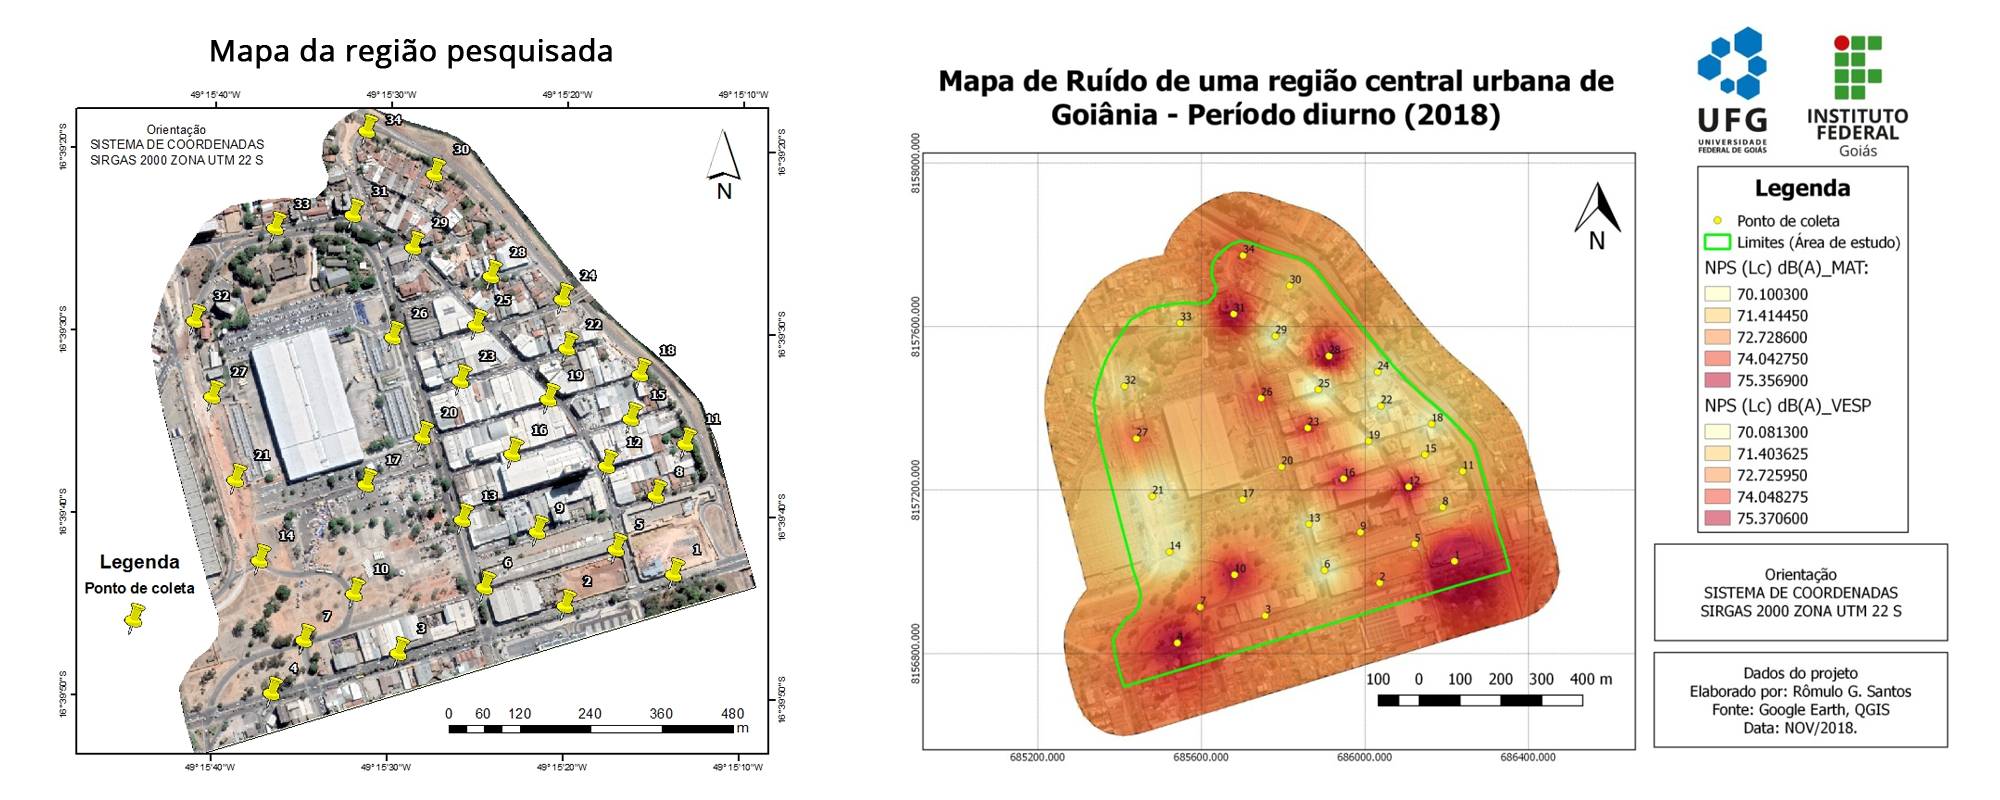 Mapa de ruídos mostra os 34 pontos do Centro de Goiânia analisados na pesquisado e os níveis de pressão sonora registrados.